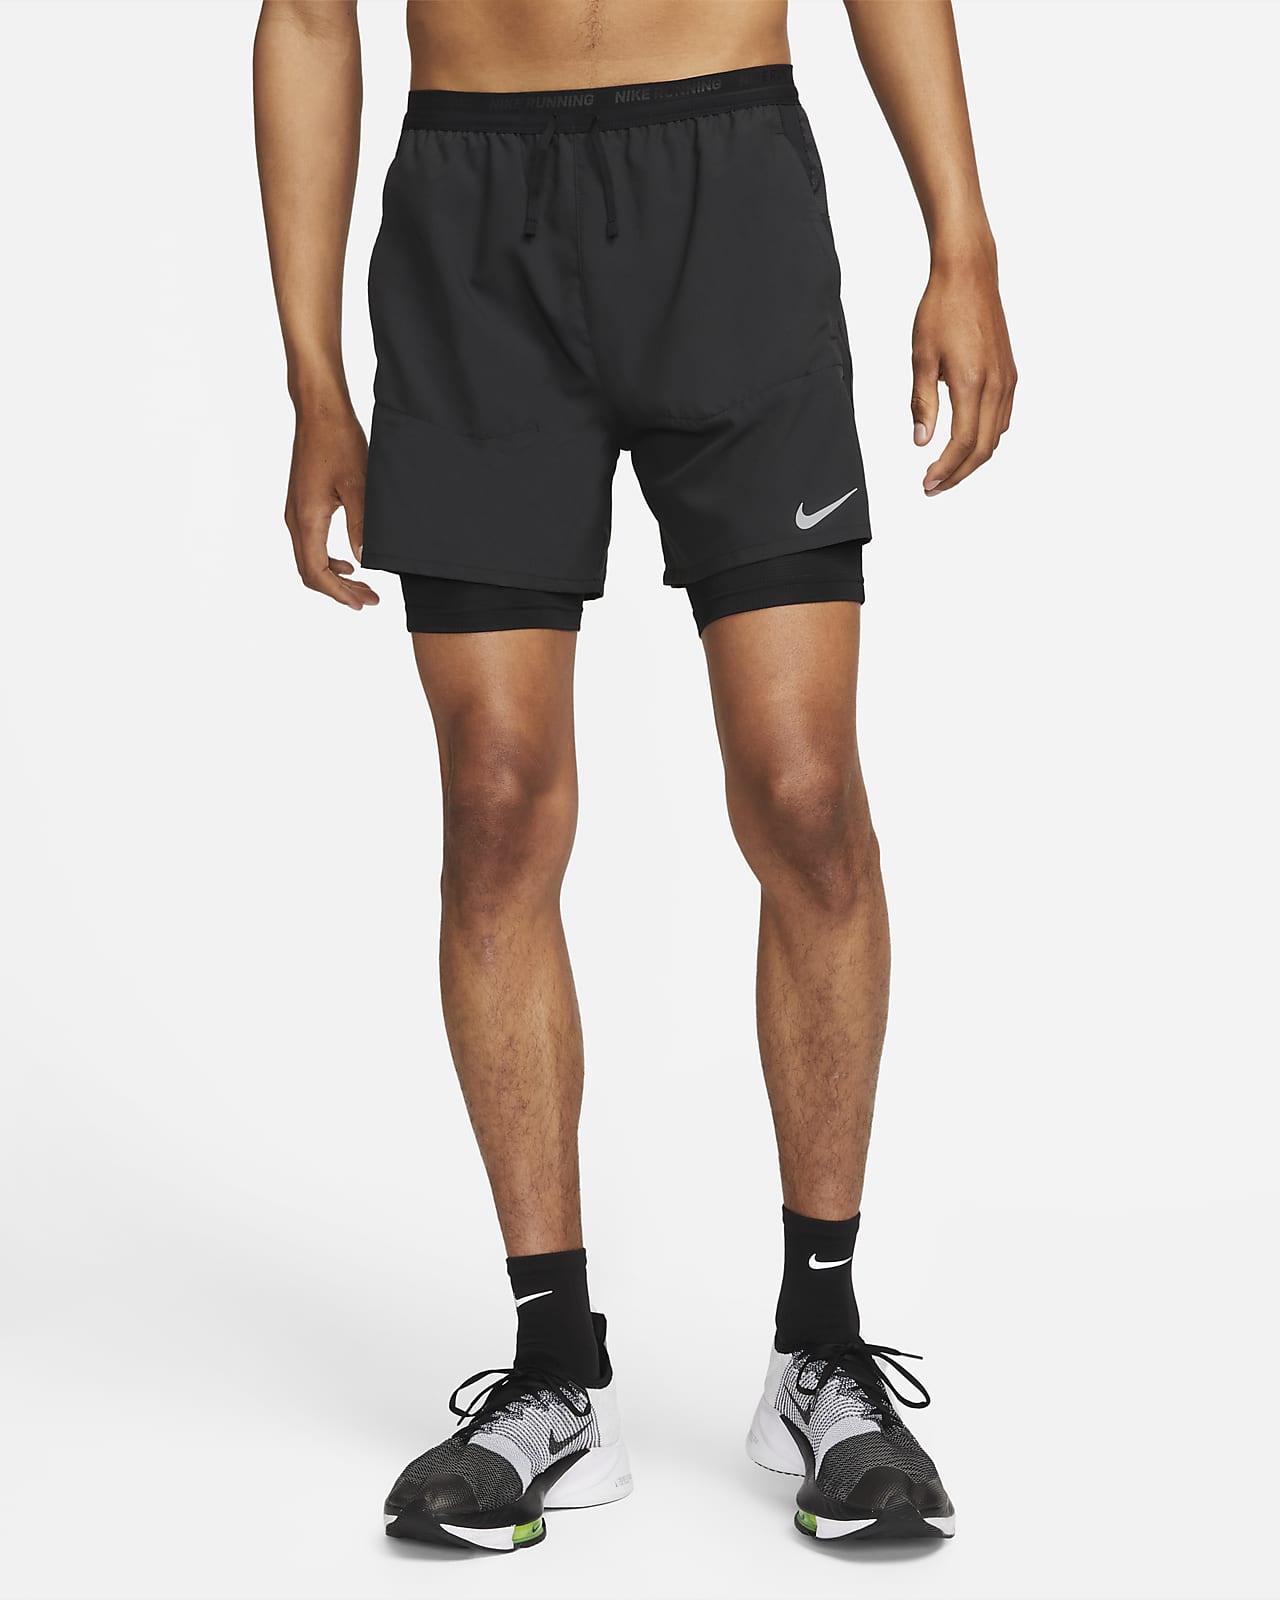 Ανδρικό υβριδικό σορτς για τρέξιμο Dri-FIT Nike Stride 13 cm